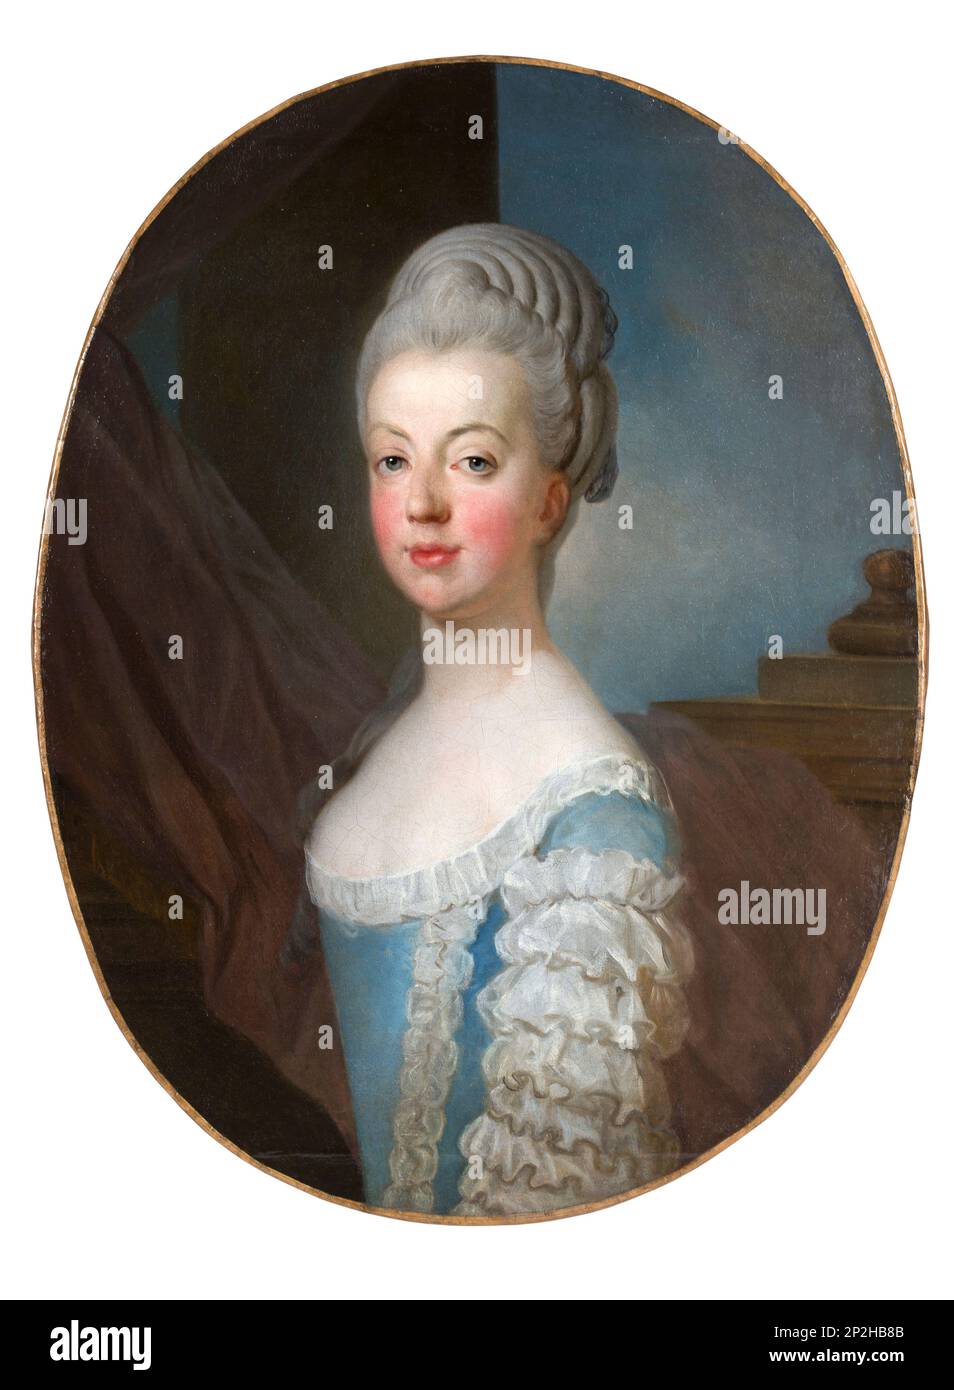 Ritratto dell'Arciduchessa Maria Antonia d'Austria (1755-1793), l'ultima regina Maria Antonietta di Francia, circa 1770. Collezione privata. Foto Stock